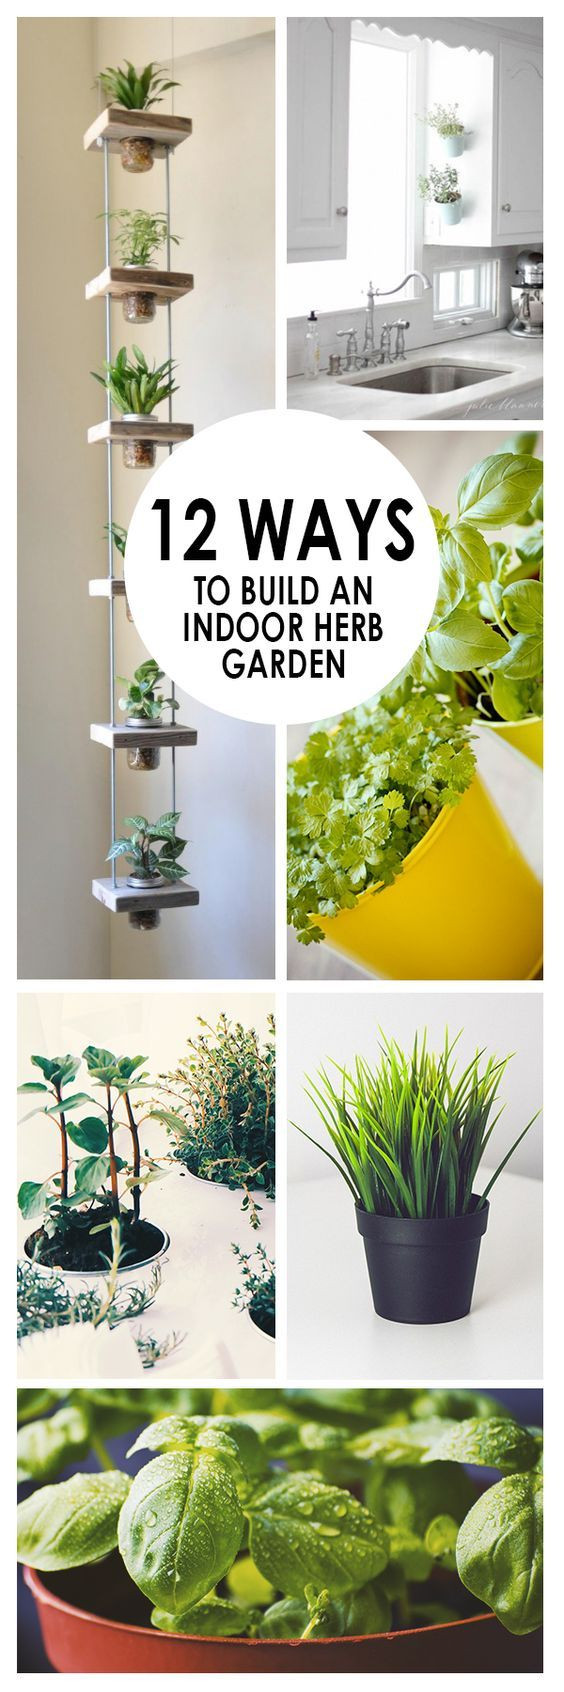 Best ideas about Hydroponic Herb Garden DIY
. Save or Pin Best 25 Hydroponic herb garden ideas on Pinterest Now.